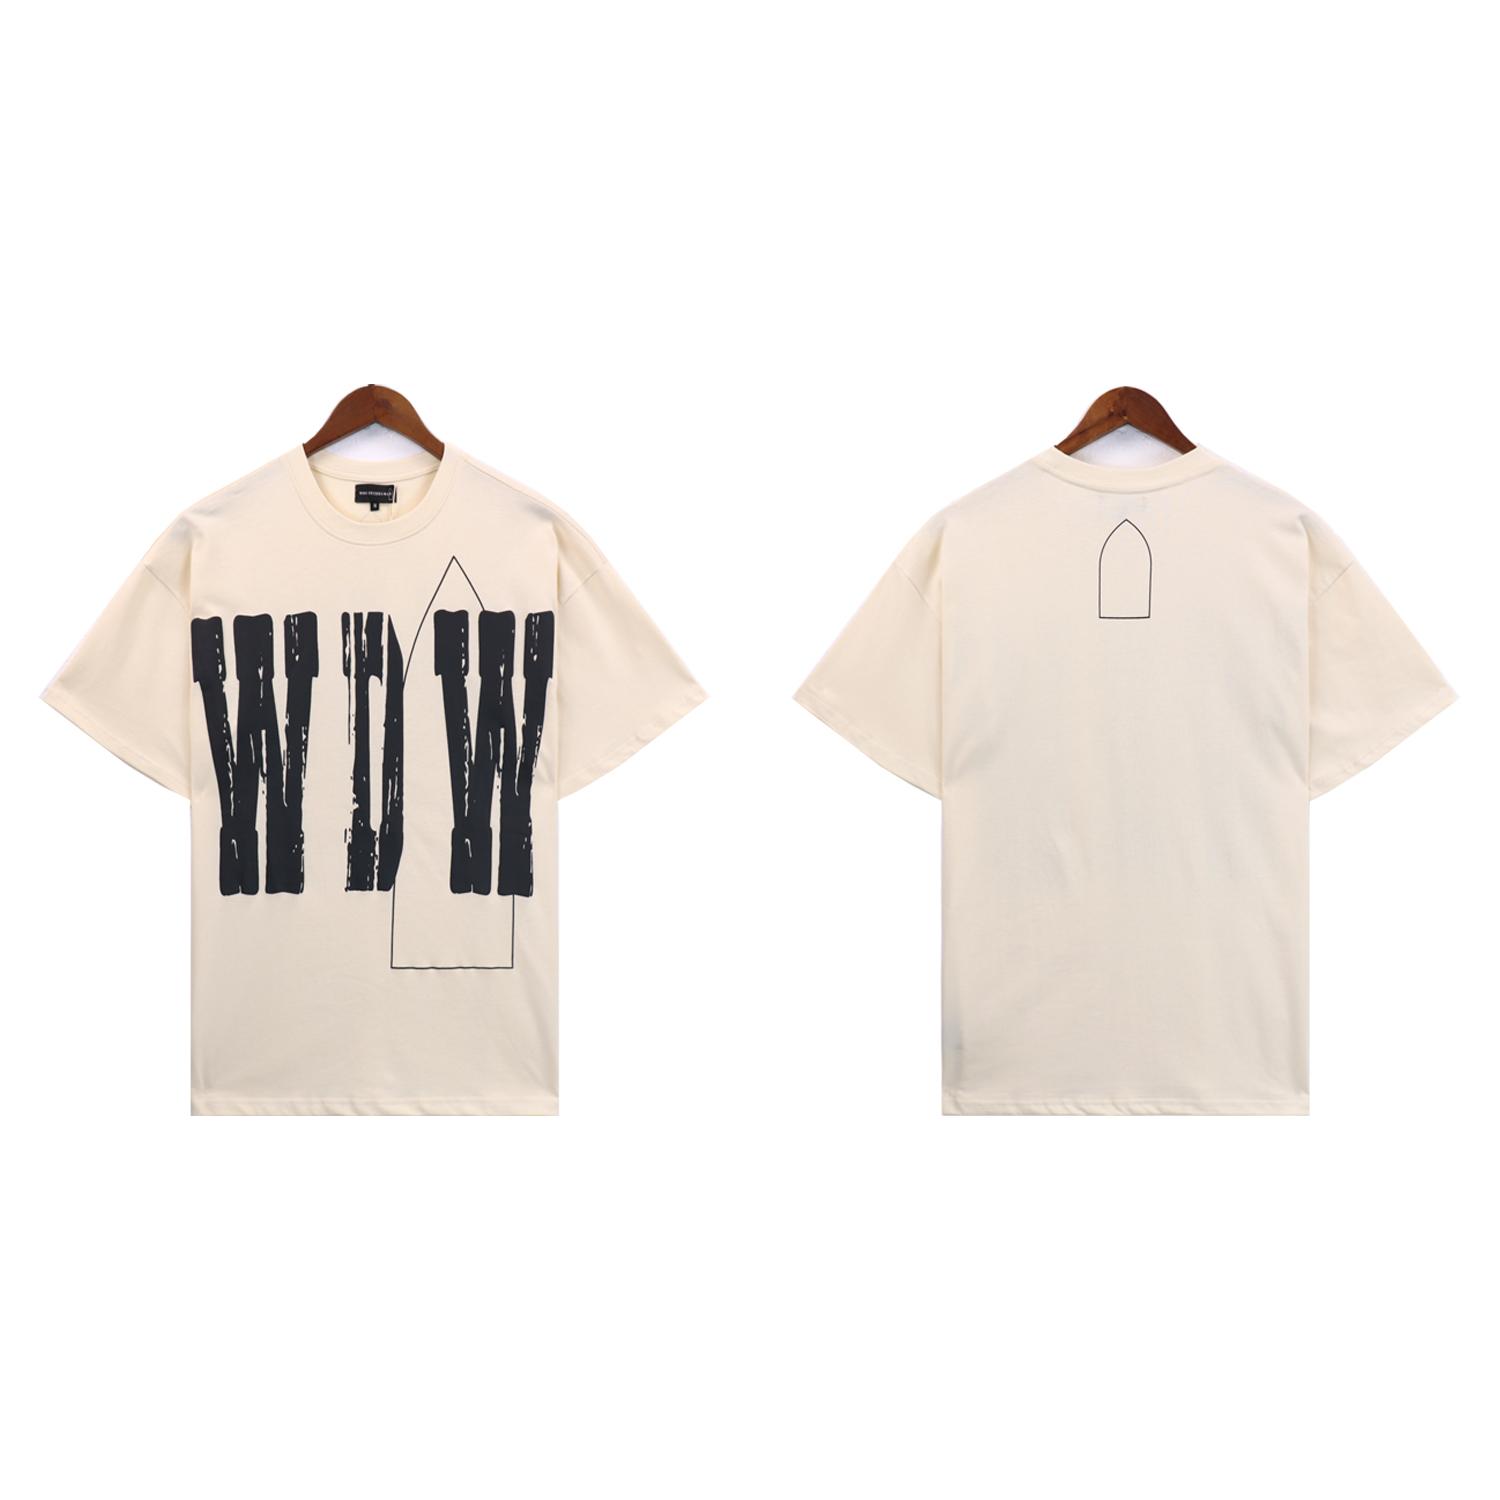 Who Decides War WDW Cotton T-shirt - DesignerGu